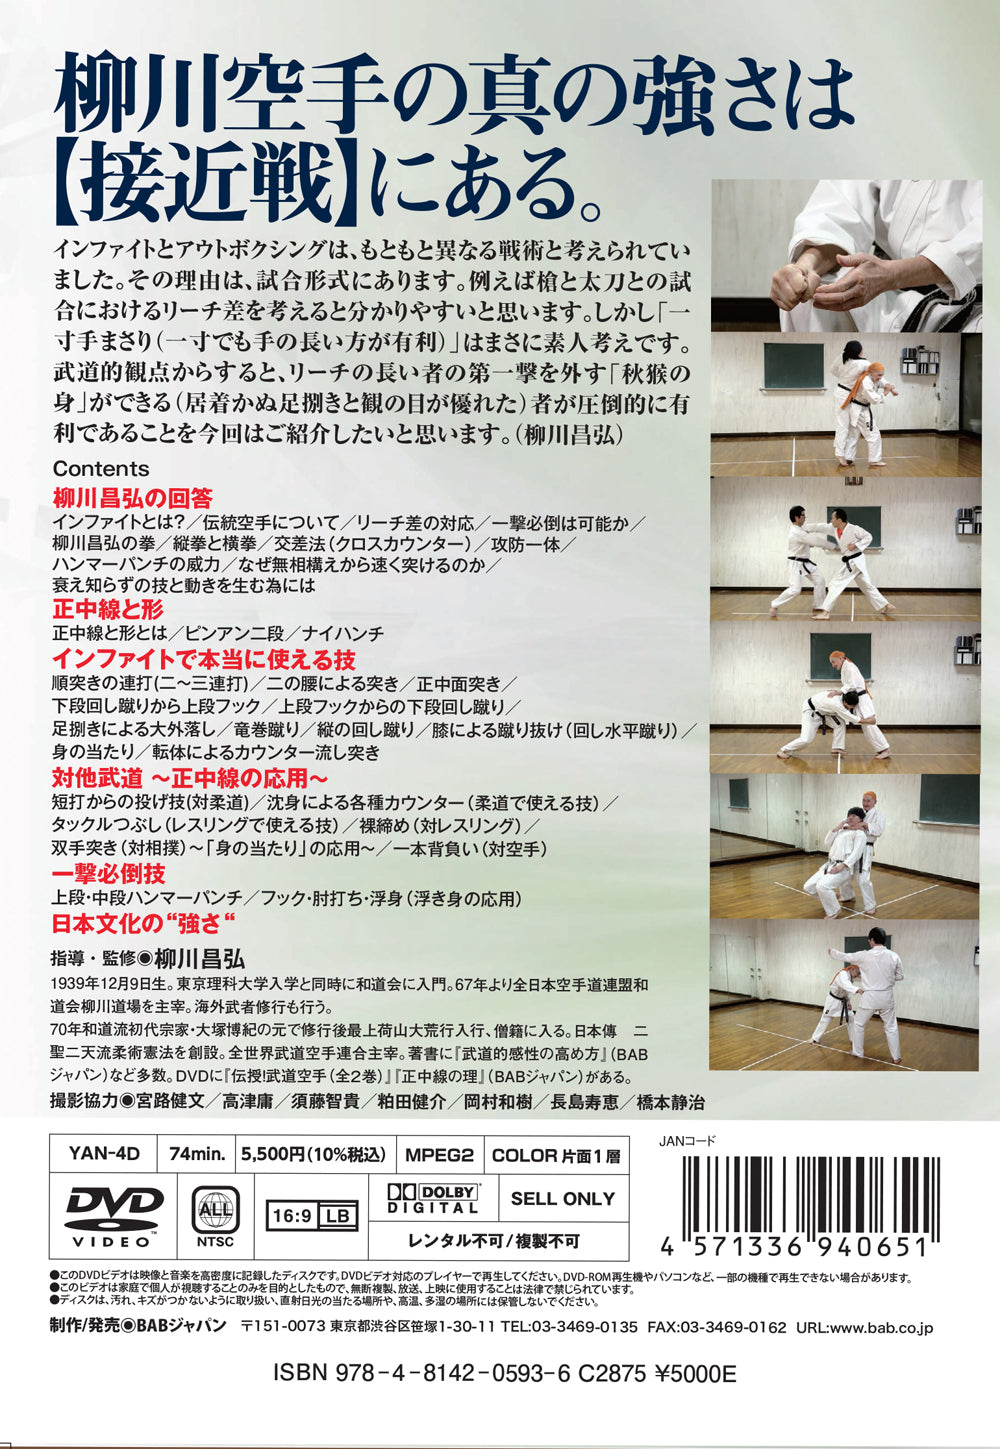 Mastering the Art of Budo Karate Infighting  DVD by Masahiro Yanagawa